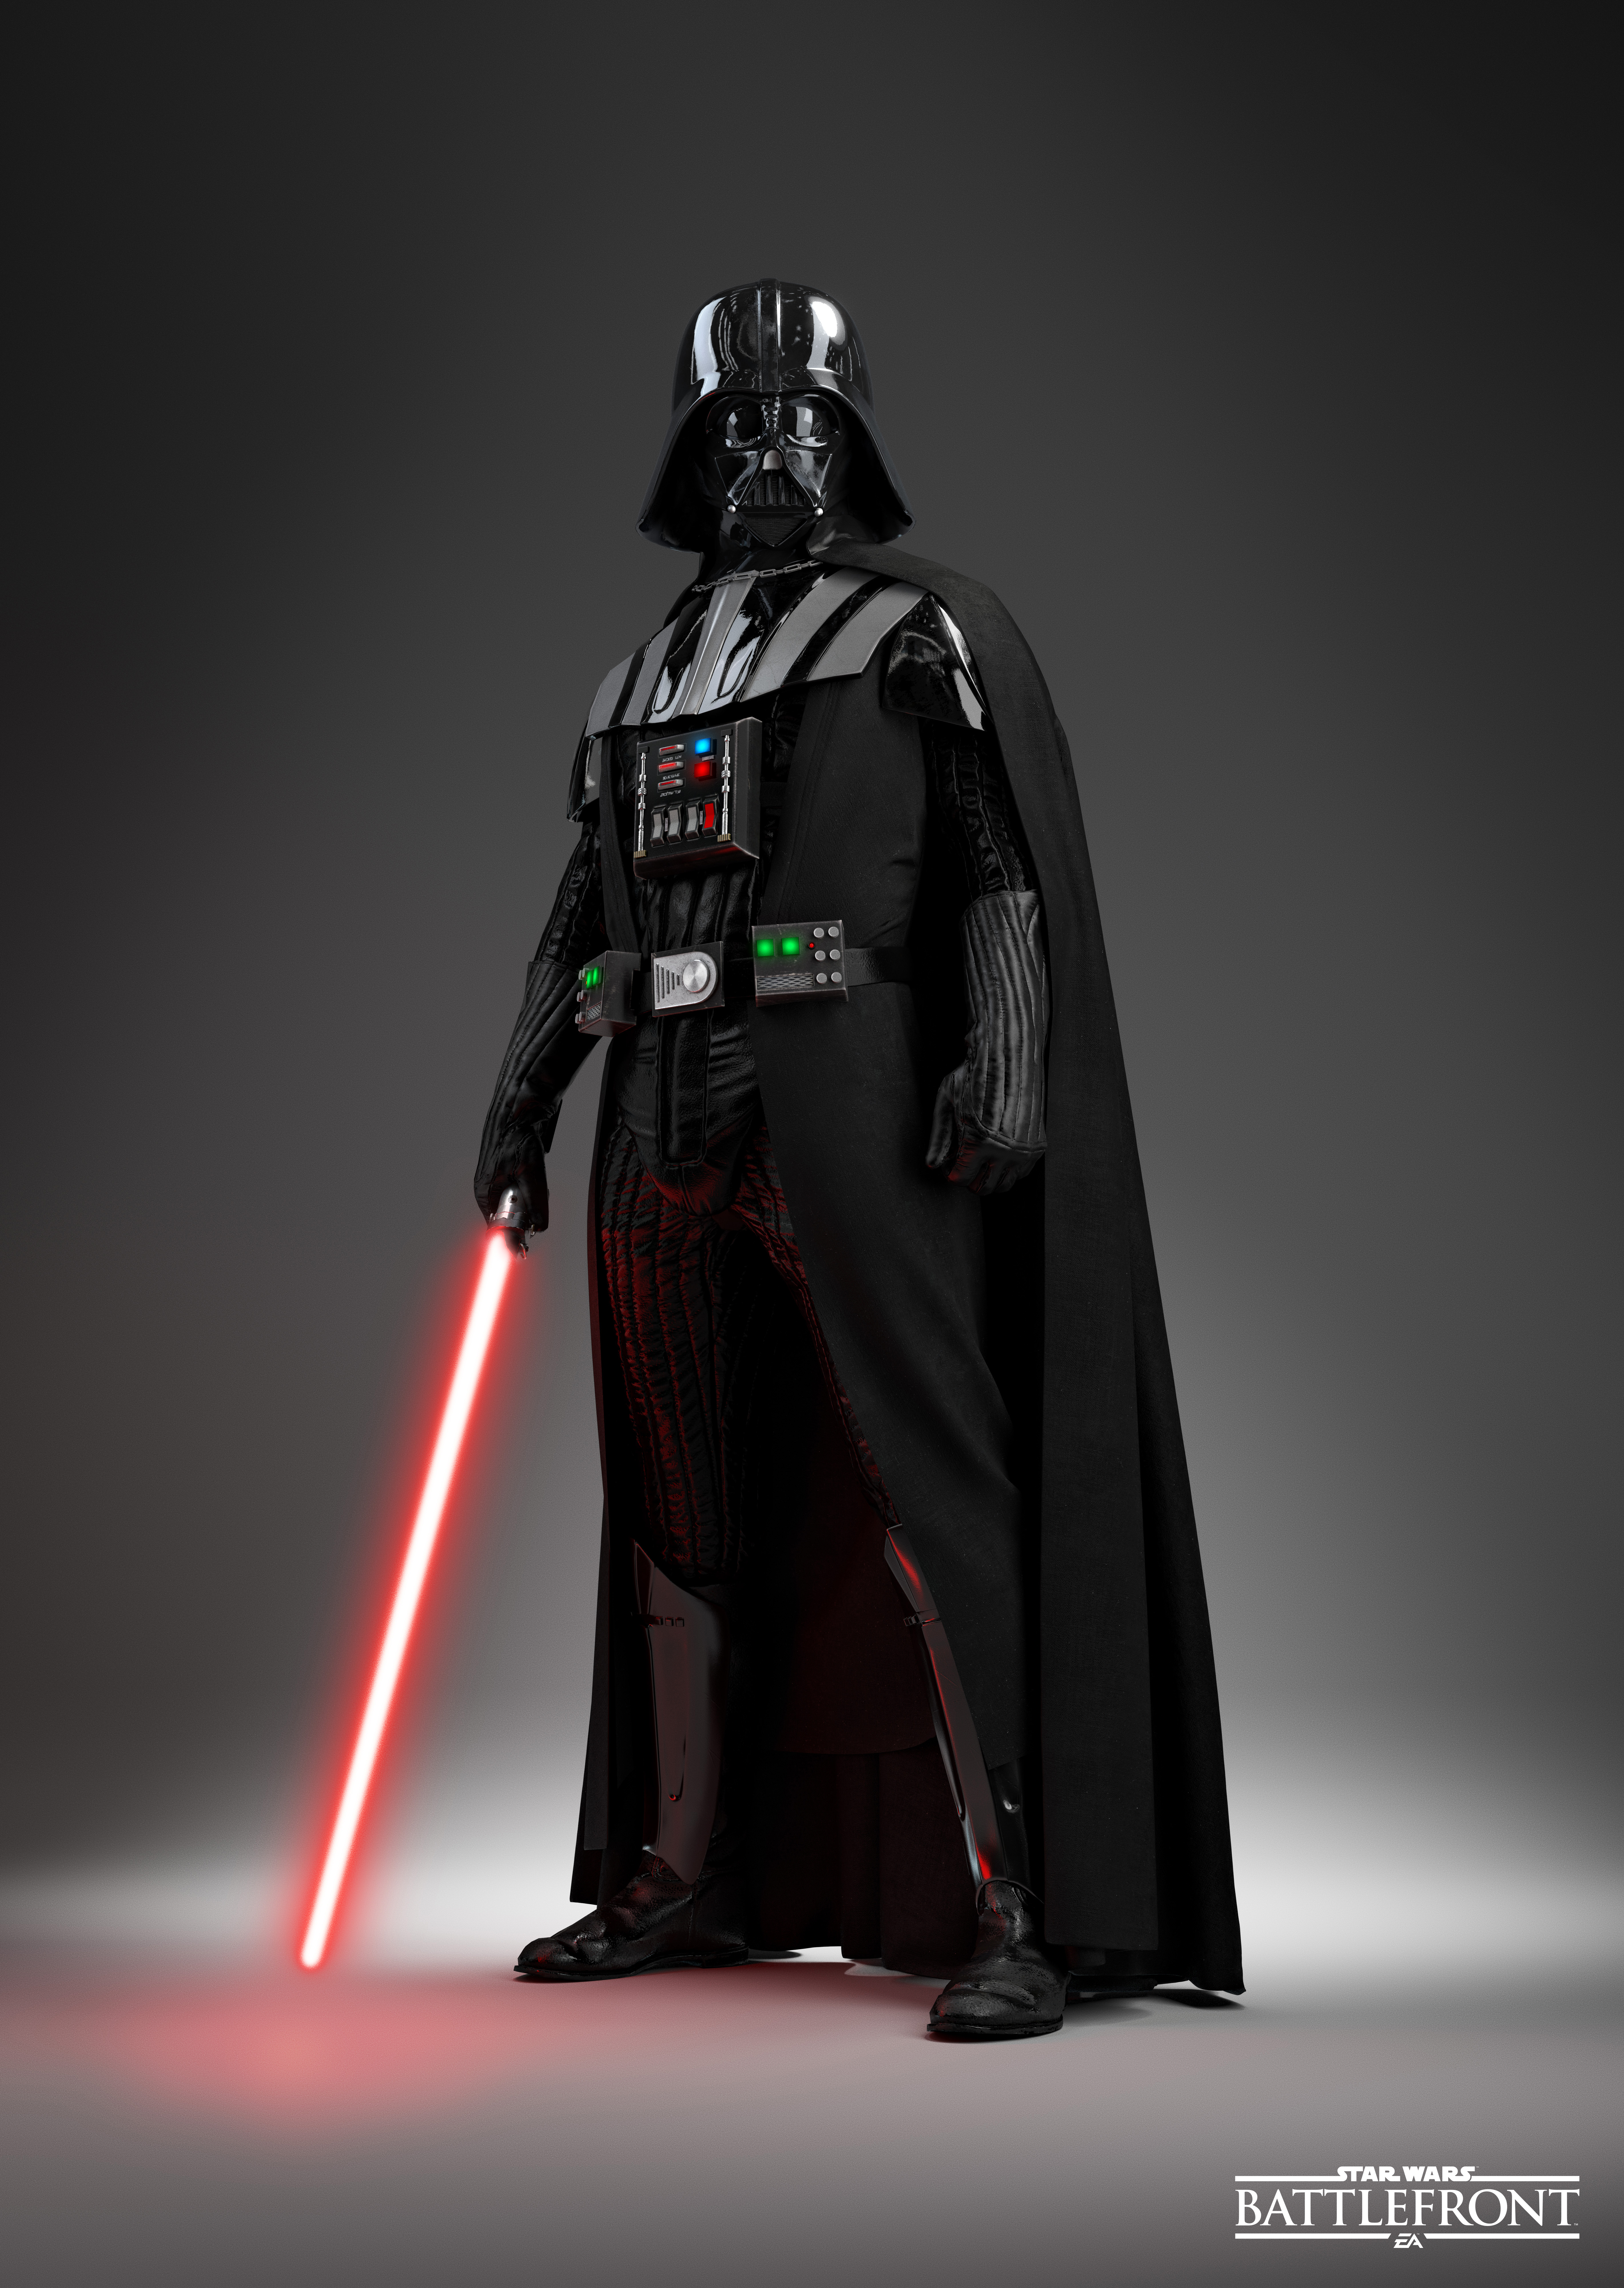 Darth Vader Star Wars Sith Lightsaber Star Wars Battlefront Video Games Portrait Display Simple Back 5680x8000